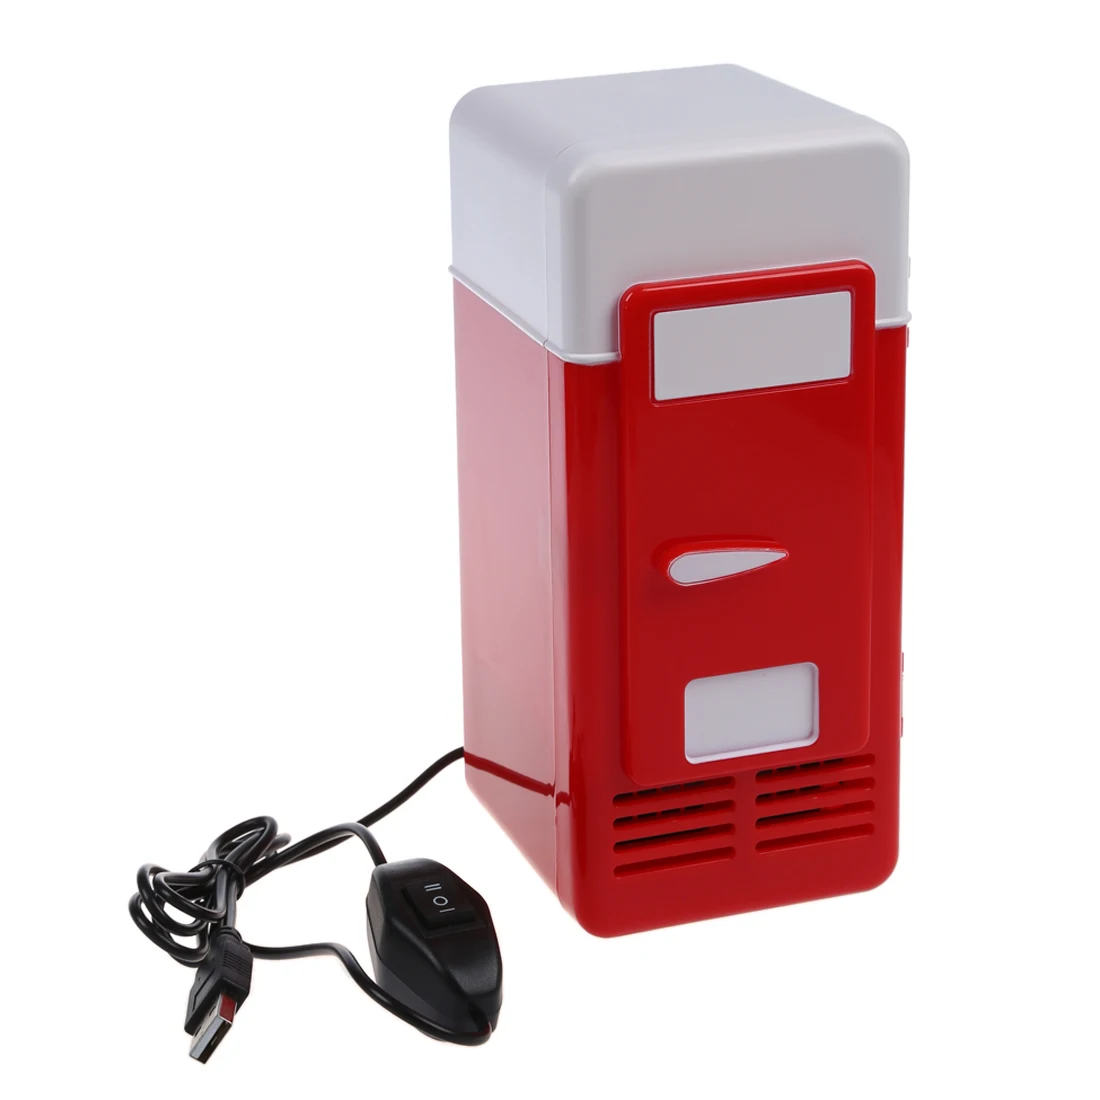 В красном мини-холодильнике с USB-портом помещается одна банка емкостью 12 унций